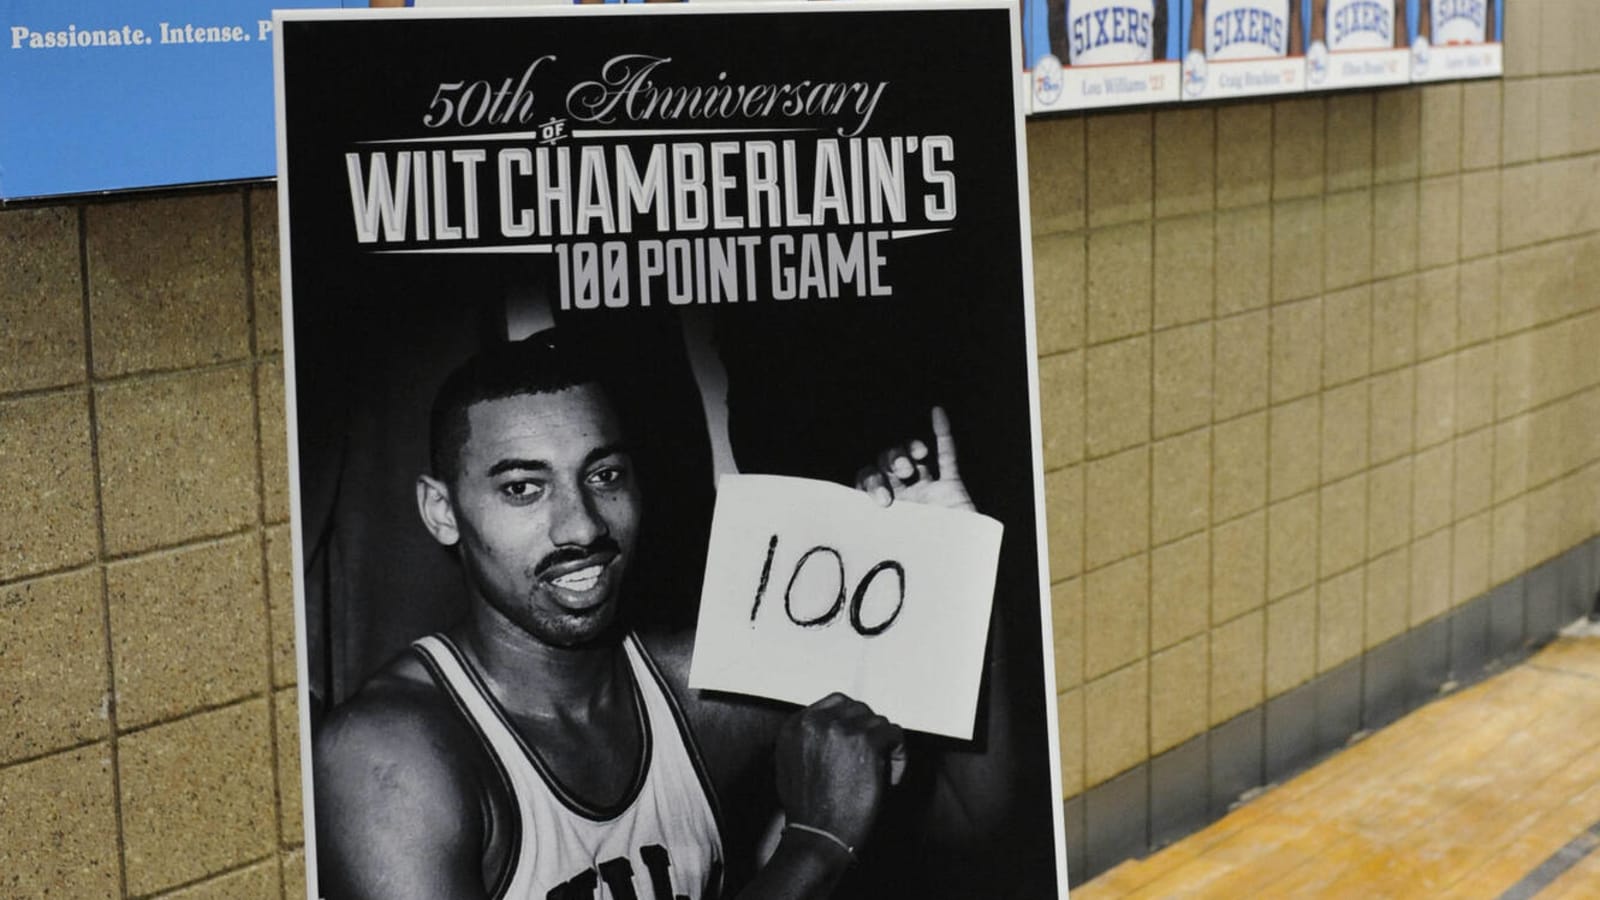  1972 NBA Finals Wilt Chamberlain Jersey Sells For $4.9 Million